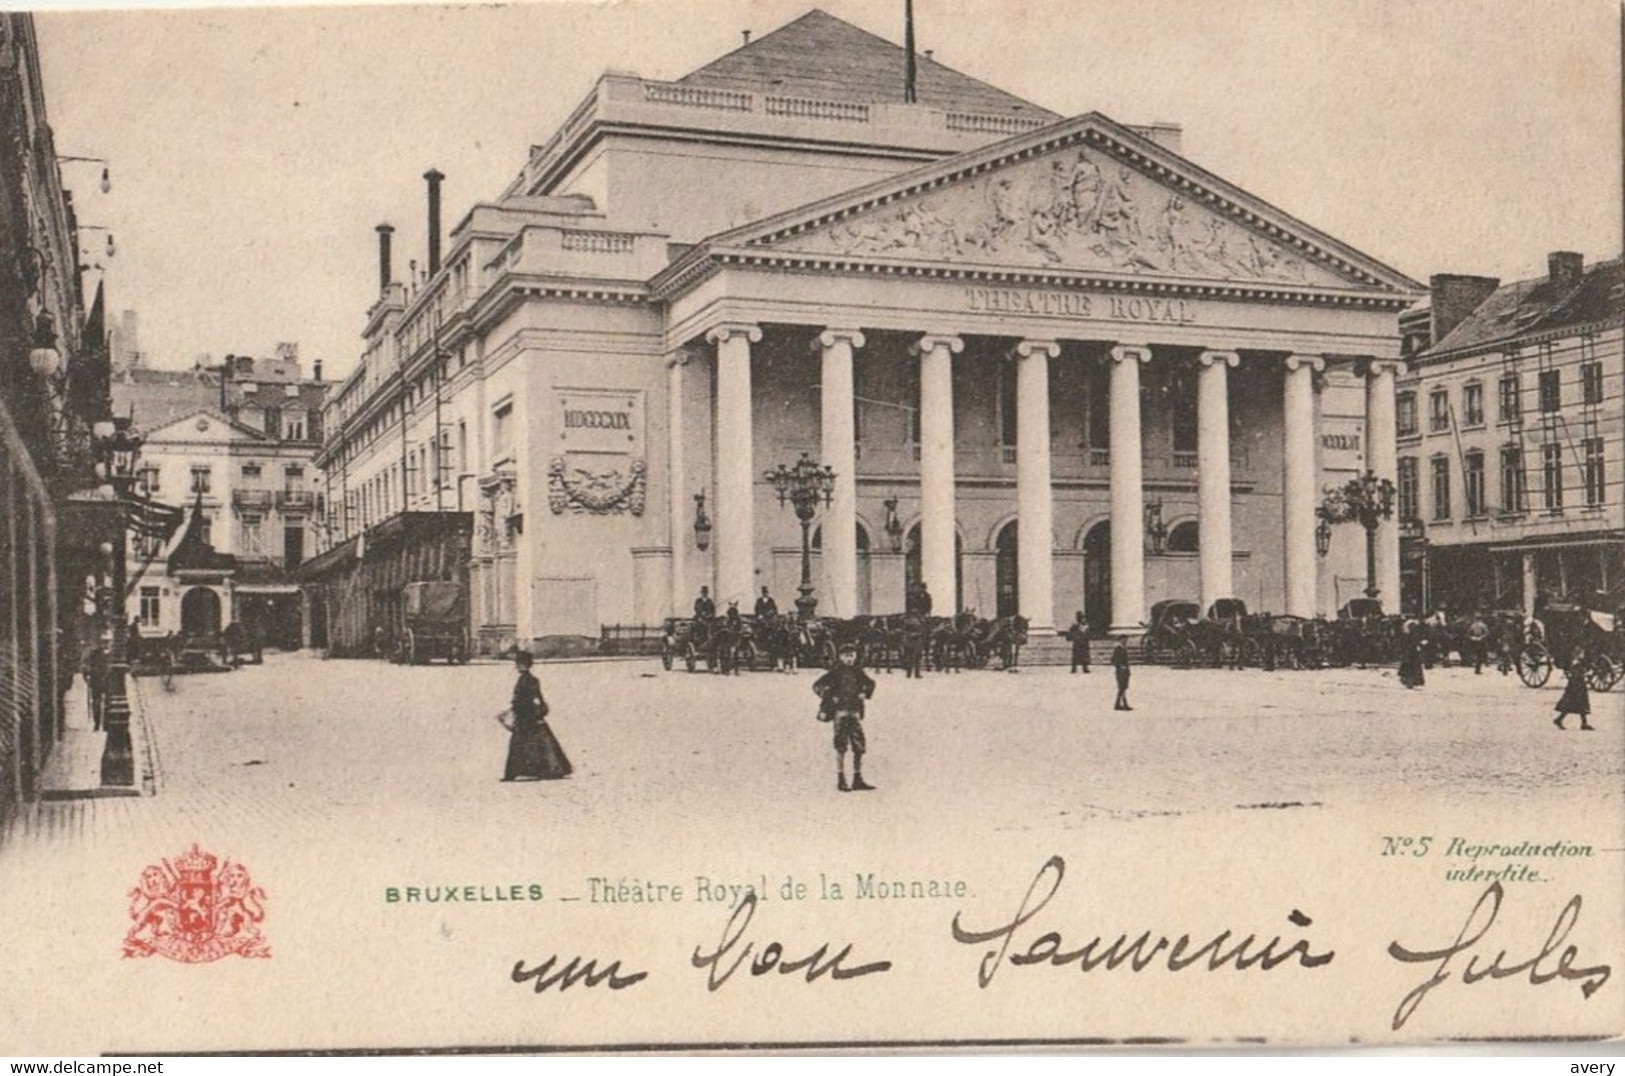 Belgium Belgium - Bruxelles - Theatre Royal De La Monnaie - Institutions Internationales